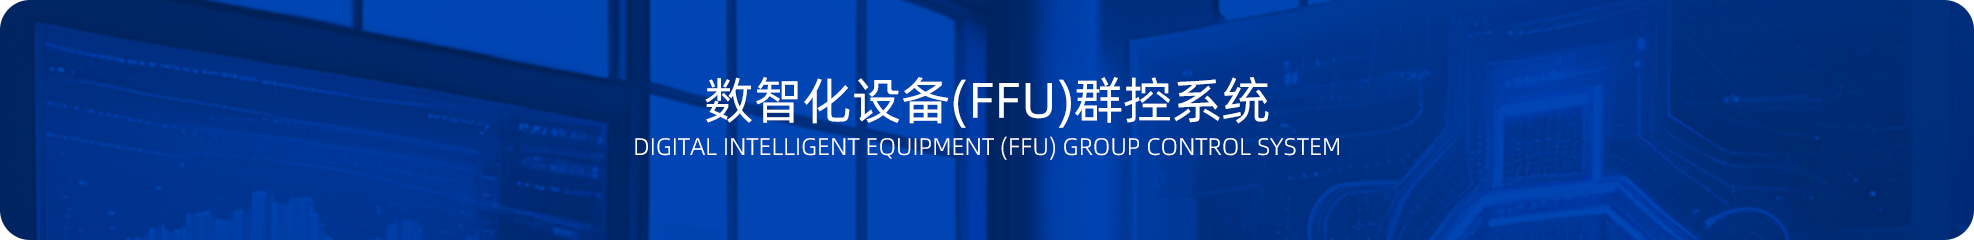 数智化设备(FFU)群控系统